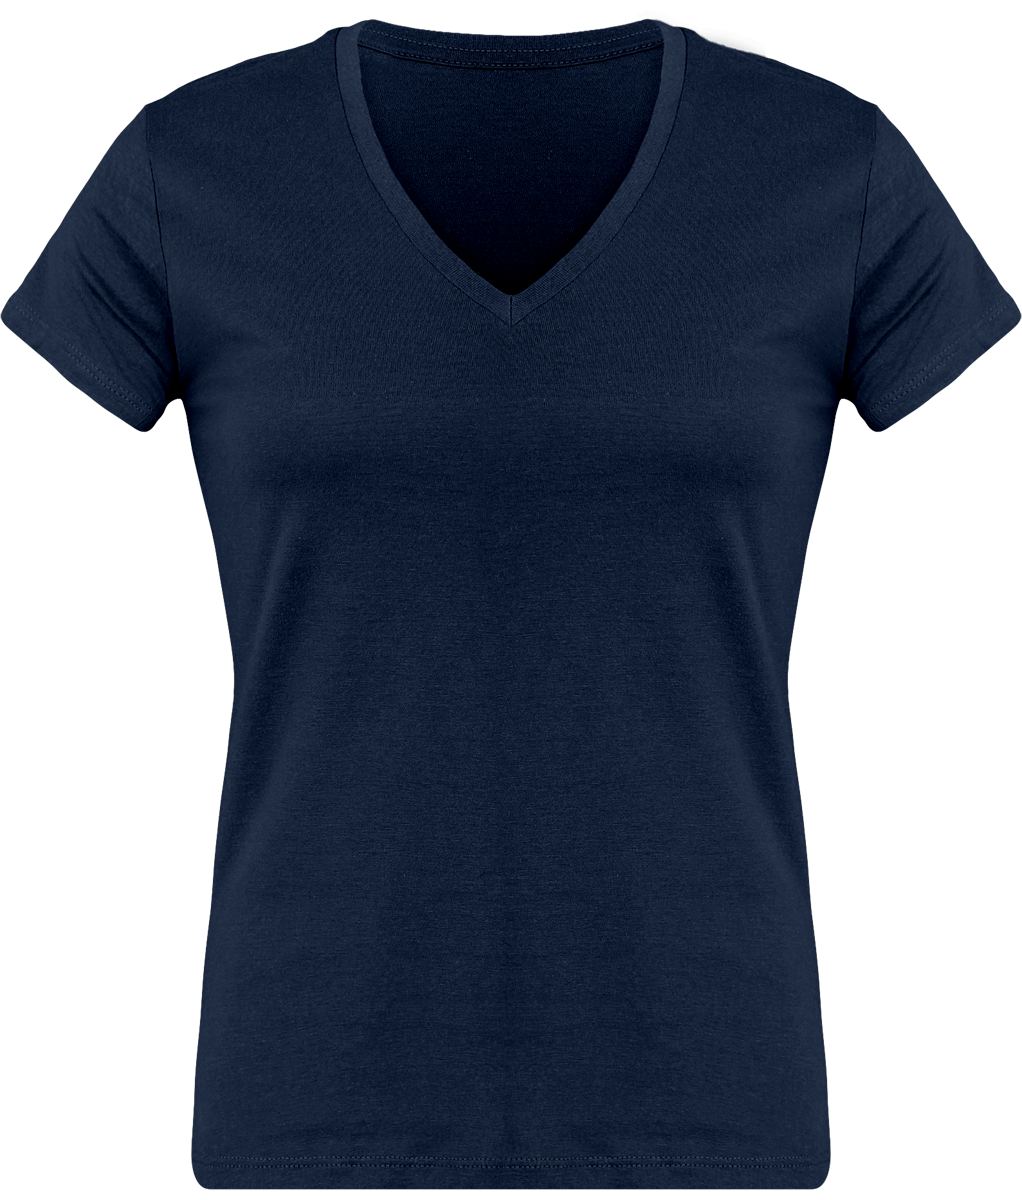 T-Shirt Femme Personnalisé, Féminin Et Confortable Avec Son Col En V Navy